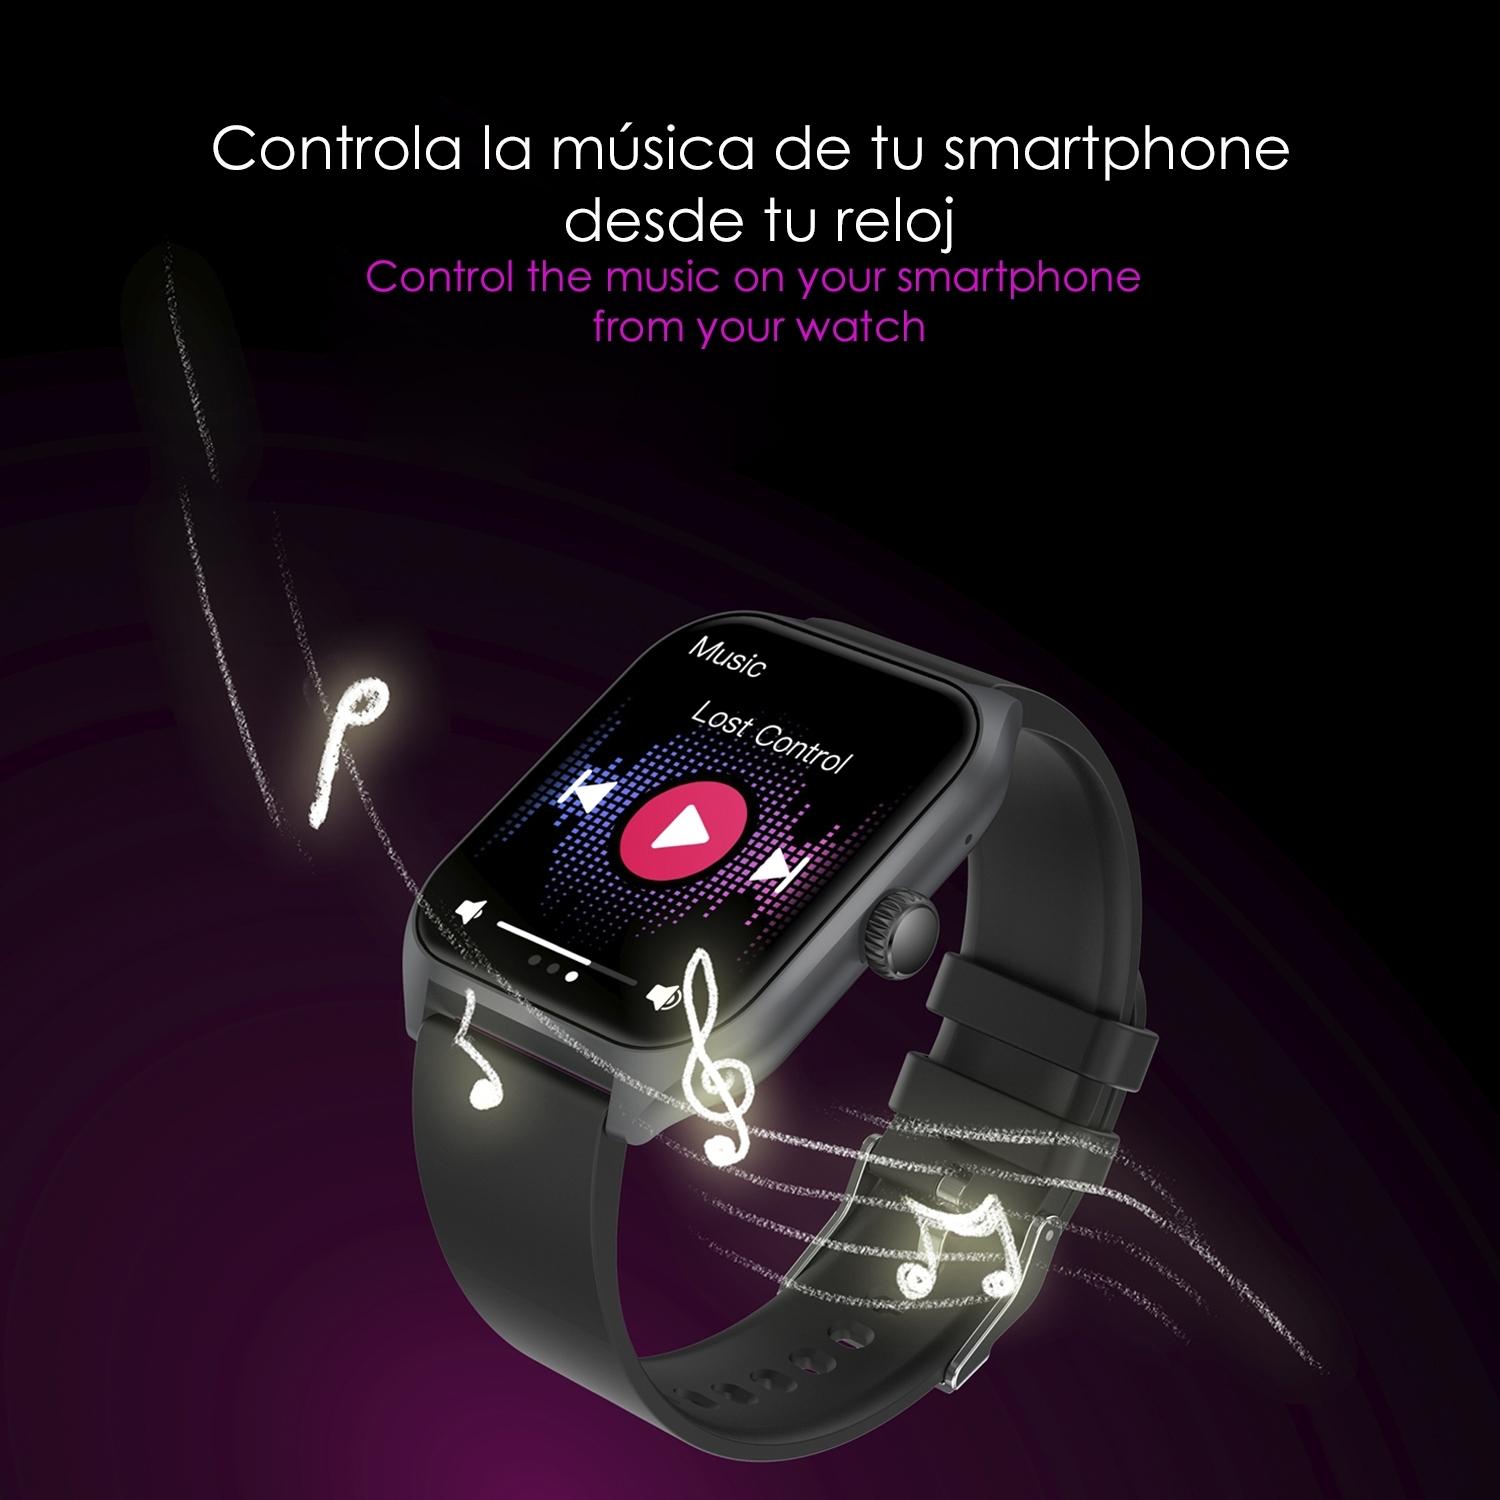 DAM Smartwatch Qx5 con pantalla de 1,96 pulgadas. Llamadas Bluetooth, más de 100 modos deportivos, monitor de glucosa y de tensión.